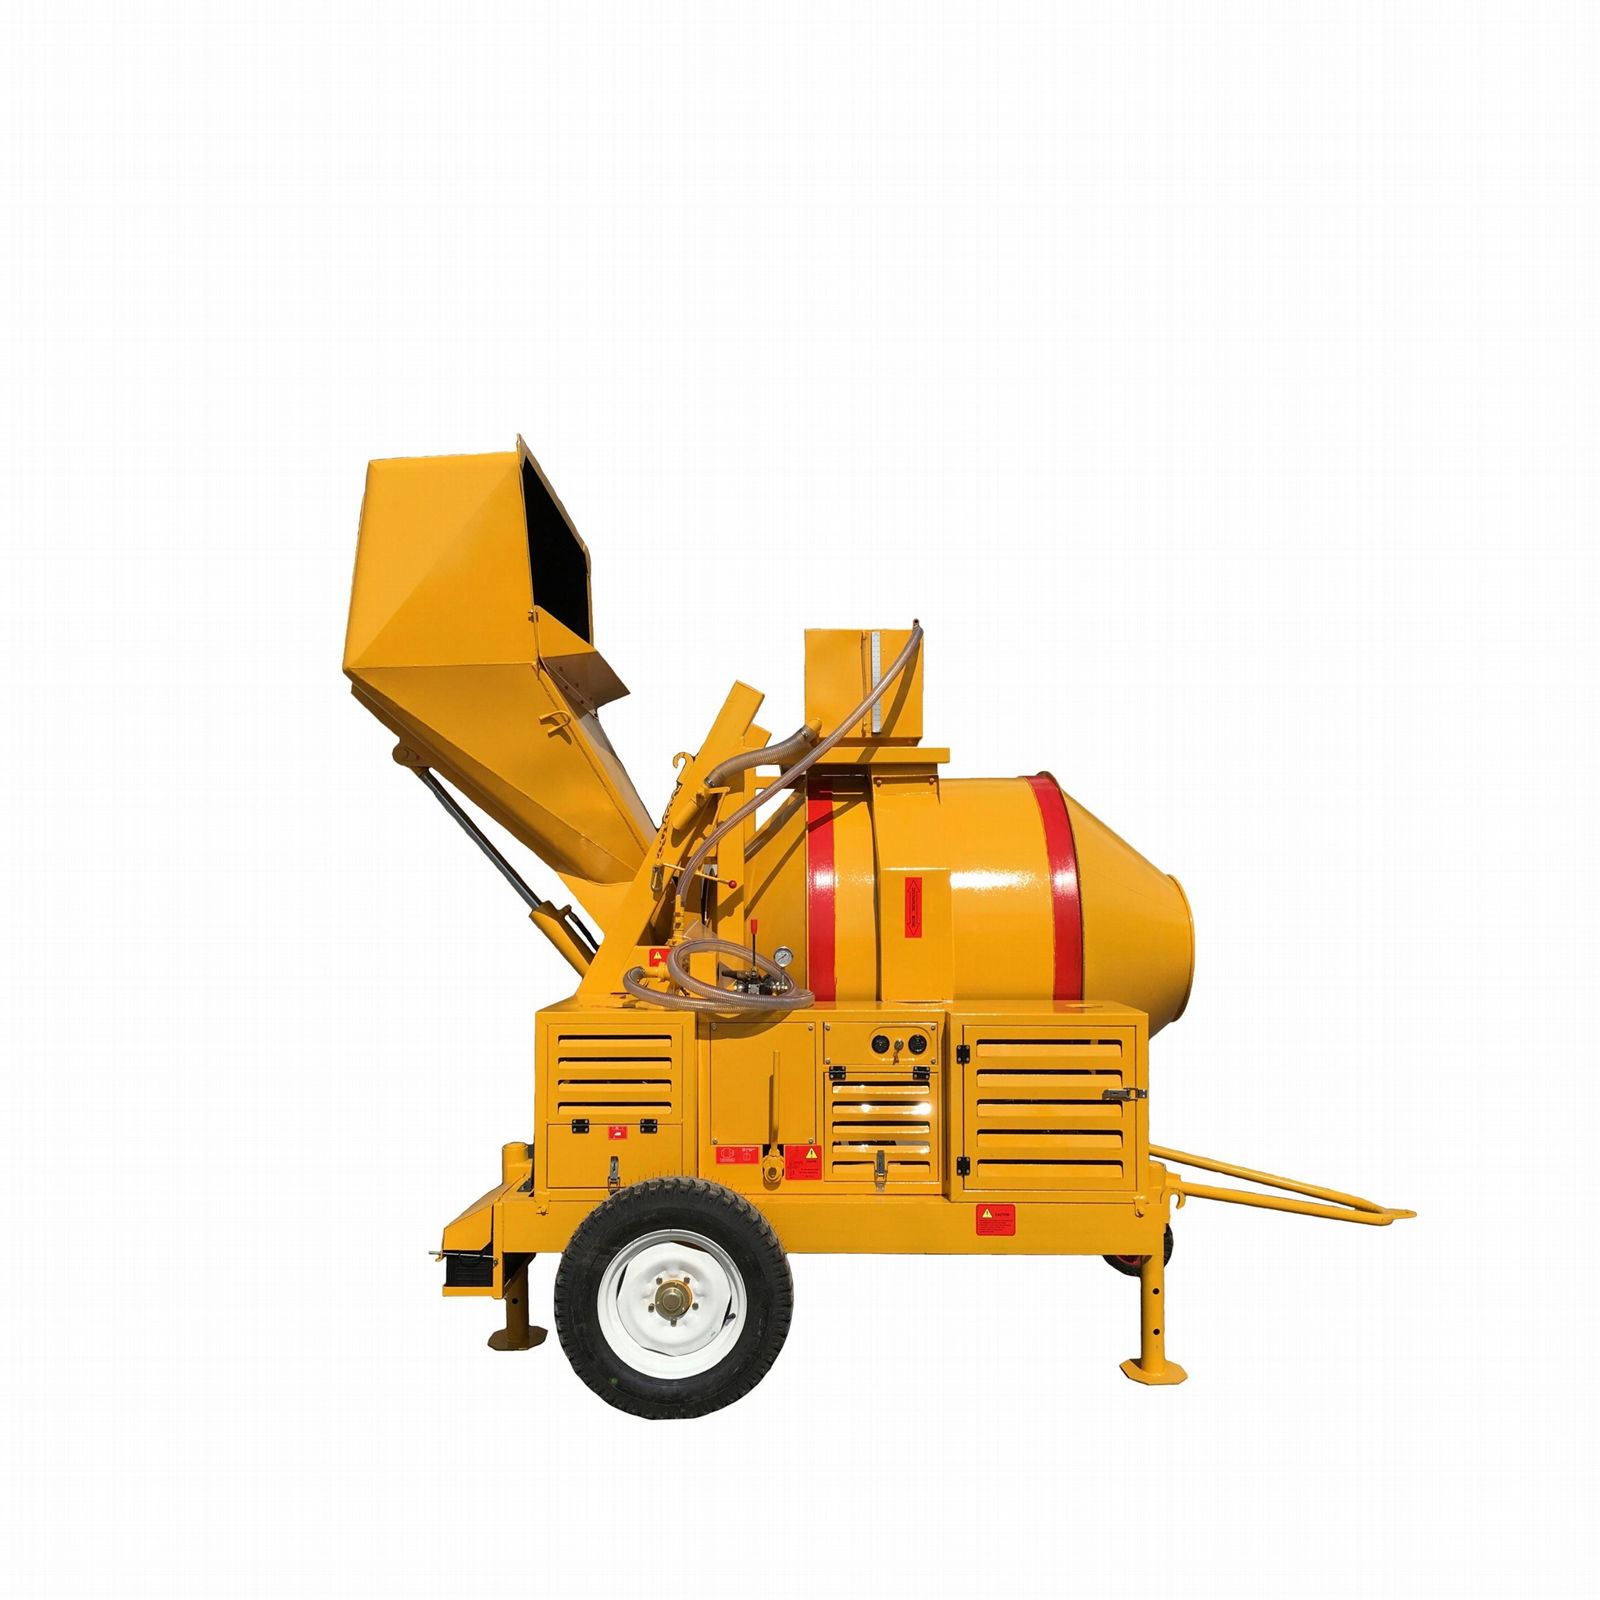 RDCM500-16DH Diesel Concrete Mixer 